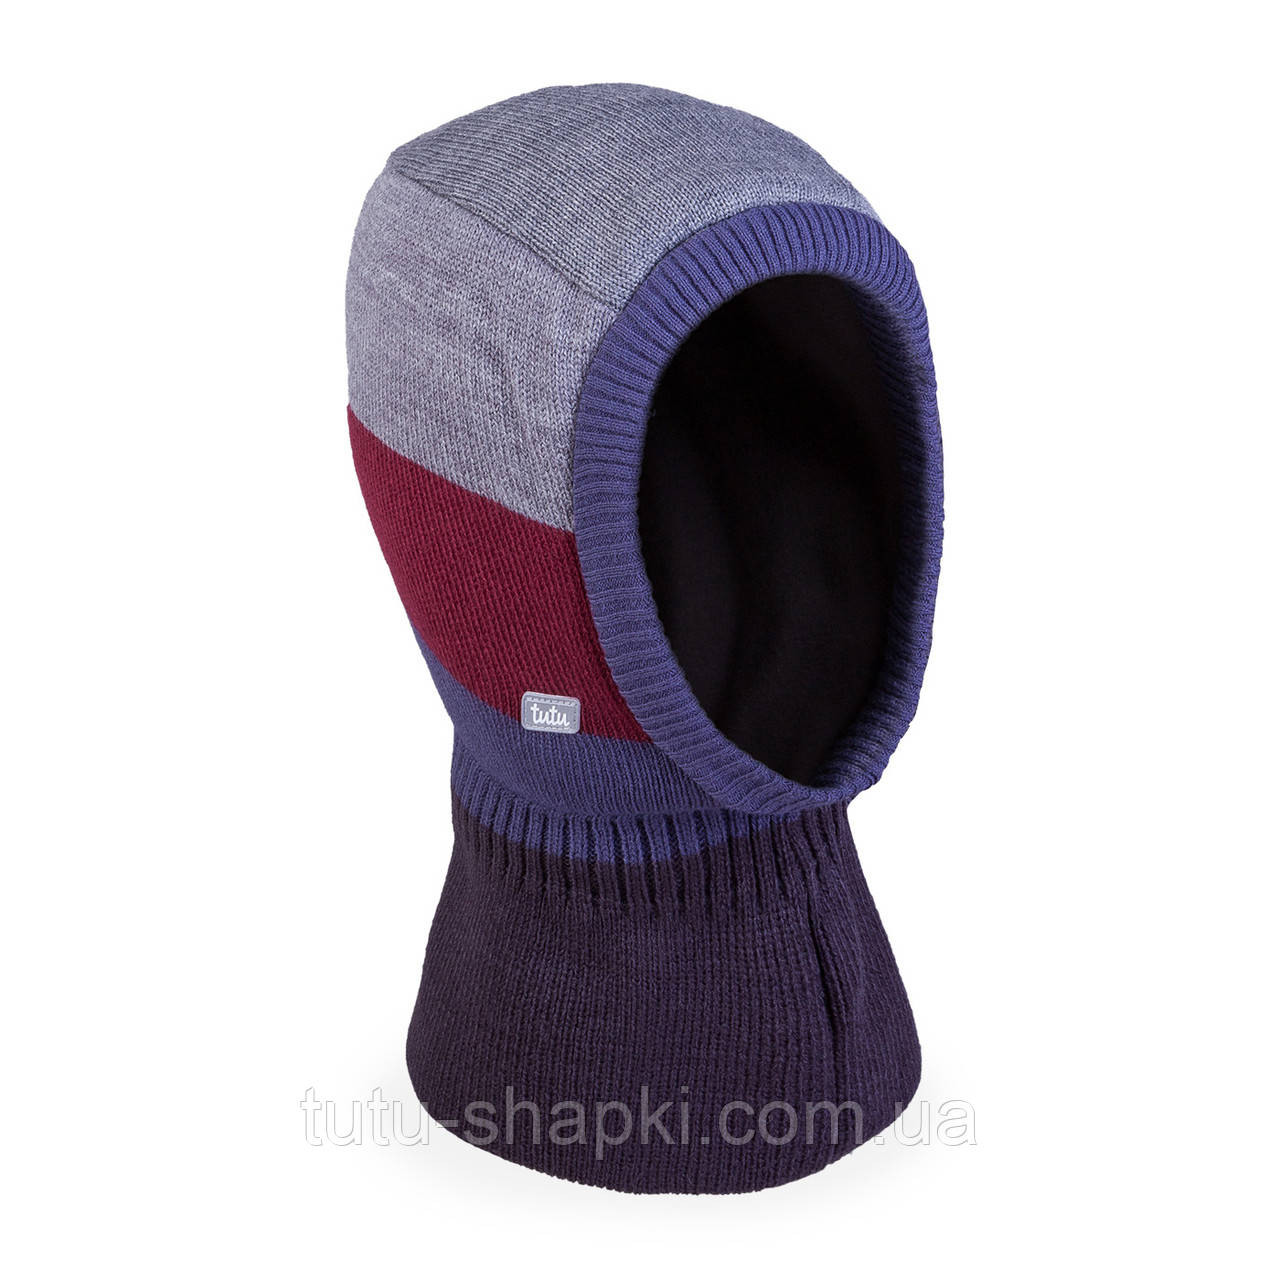 Зимова шапка-шолом для хлопчика TuTu арт. 3-005781 (46-50, 50-54 см)